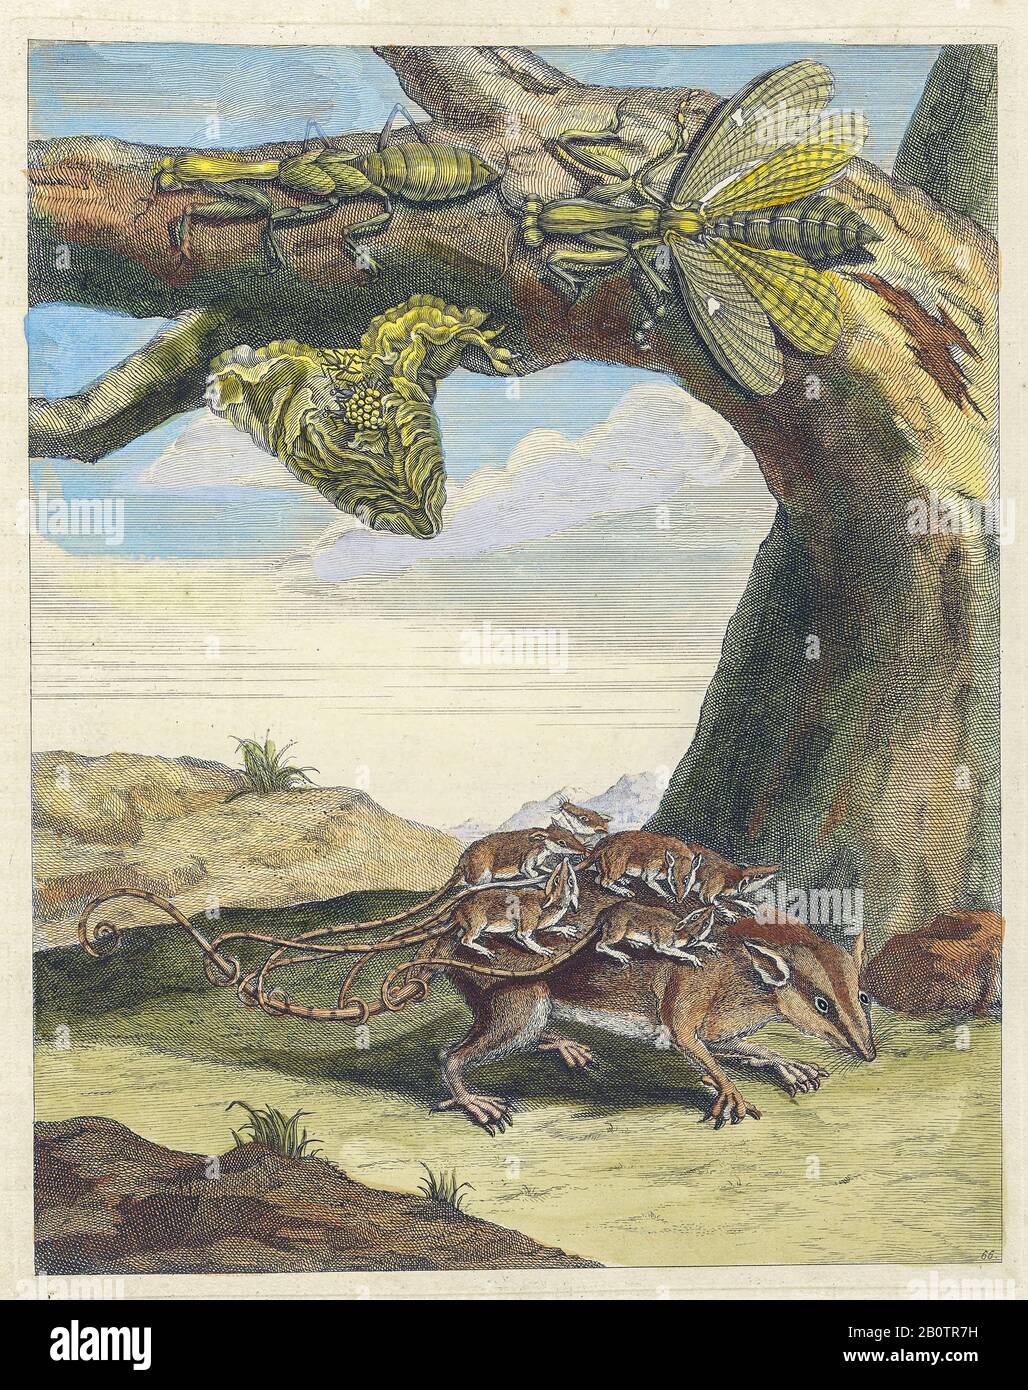 Ciclo de vida de Opossum y mantid de Metamorphosis insectorum Suriname amensium (insectos de Surinam) un libro coloreado a mano del siglo XVIII de Maria Sibylla Merian publicado en Amsterdam en 1719 Foto de stock